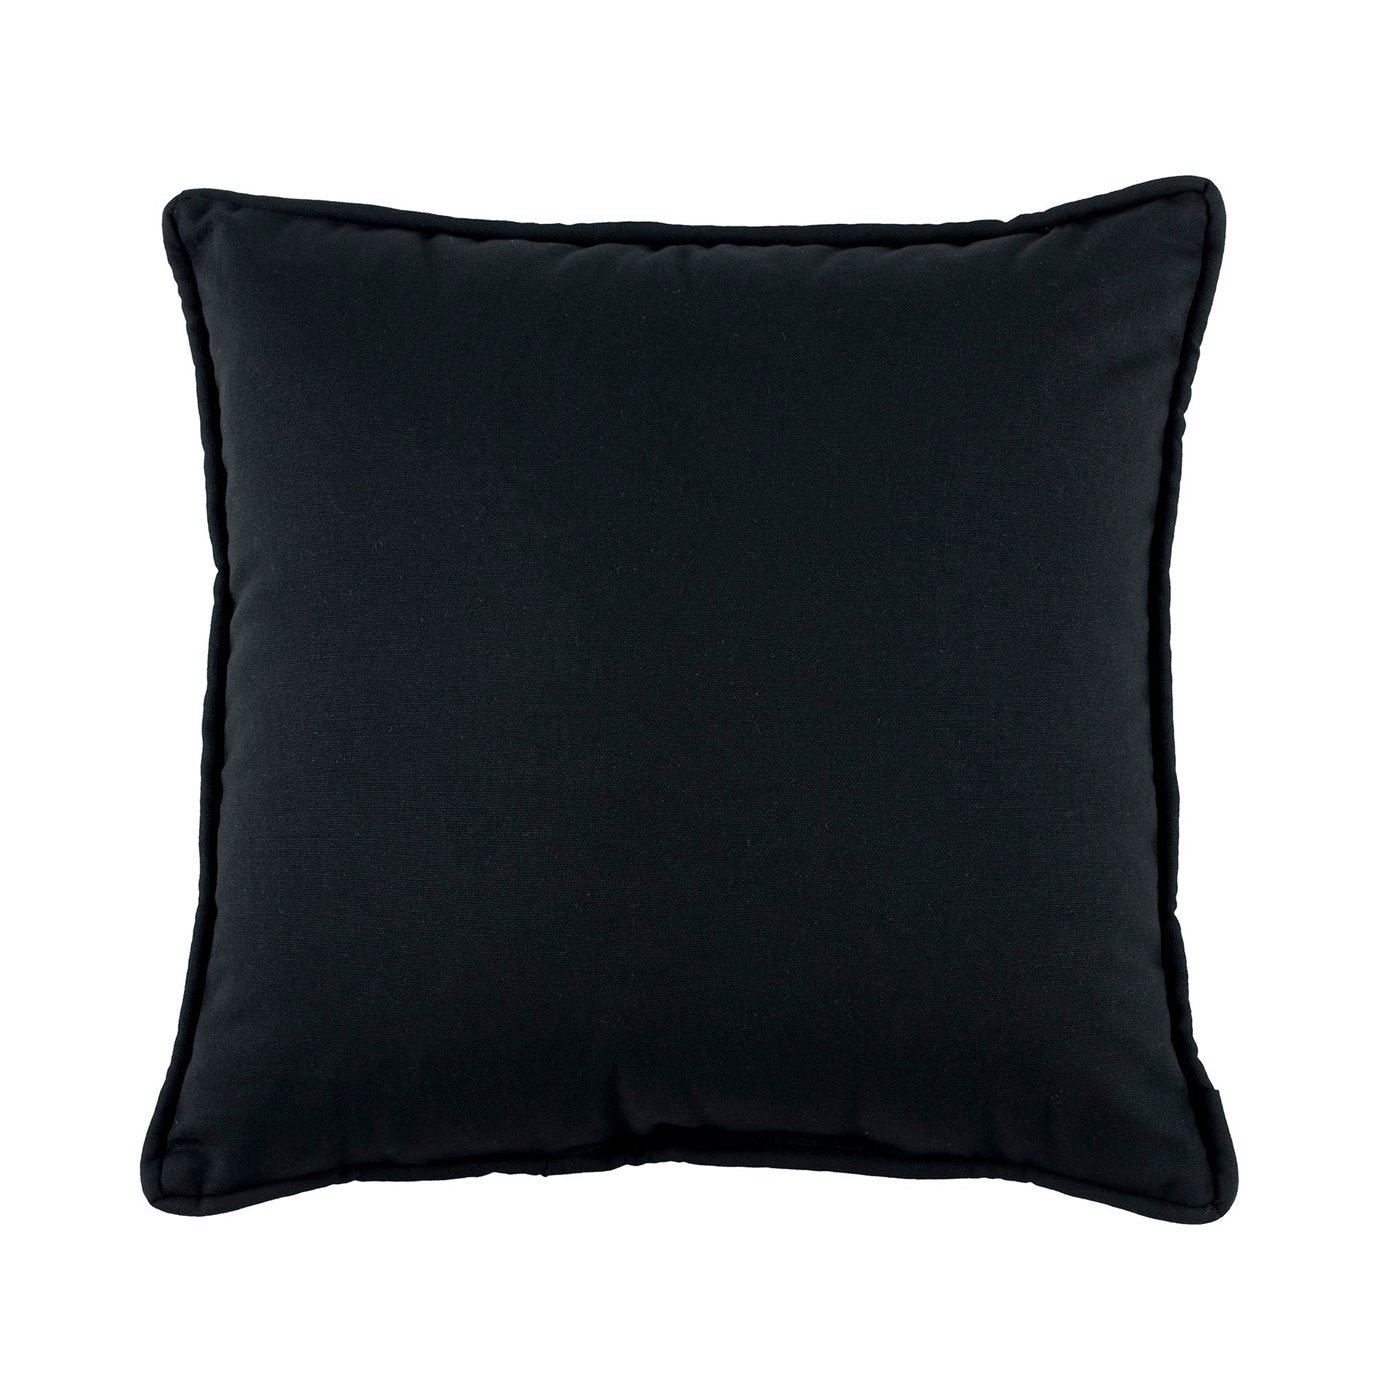 Bangla Square Pillow - Black